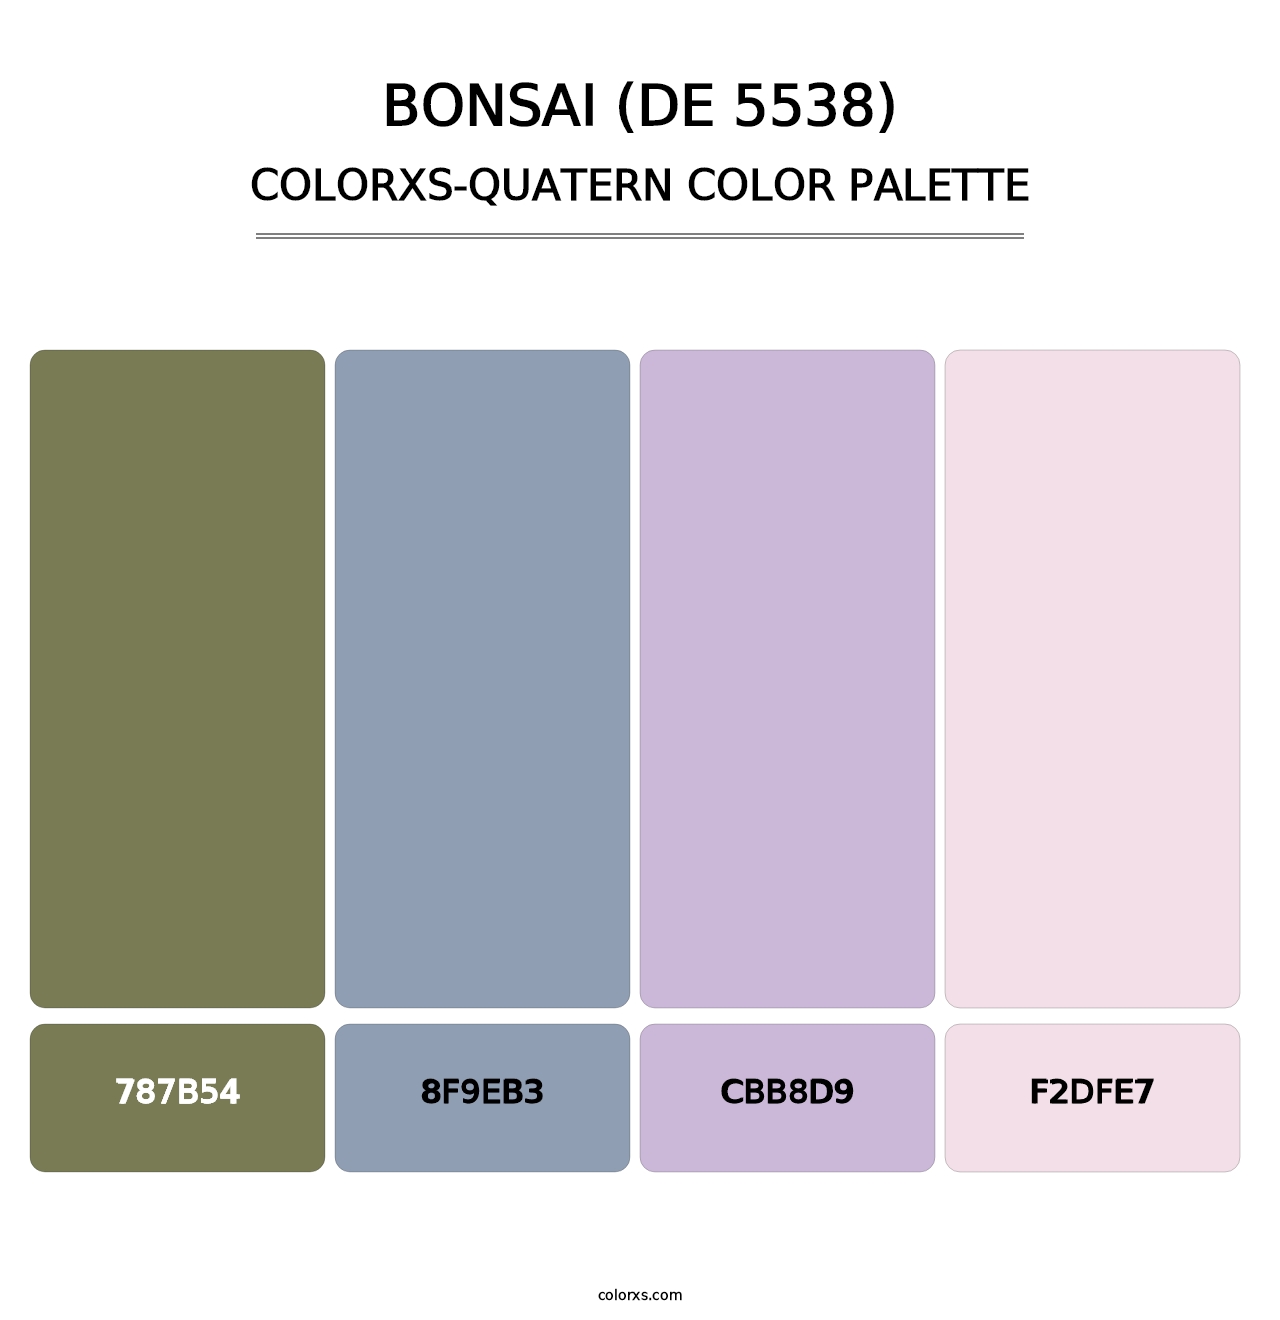 Bonsai (DE 5538) - Colorxs Quatern Palette